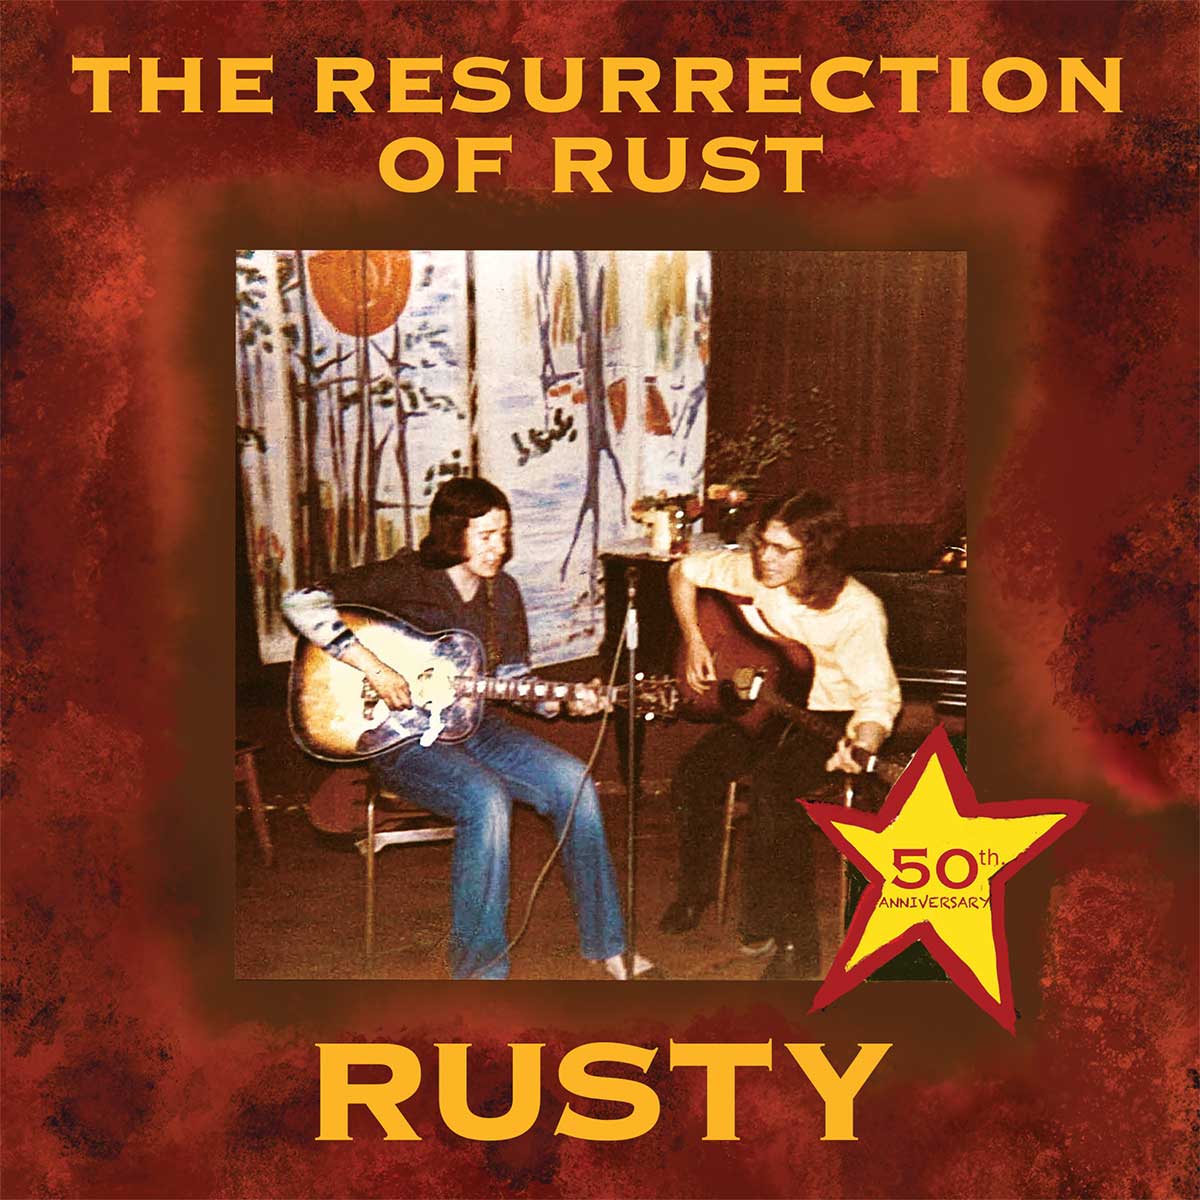 Elvis Costello's Rusty album